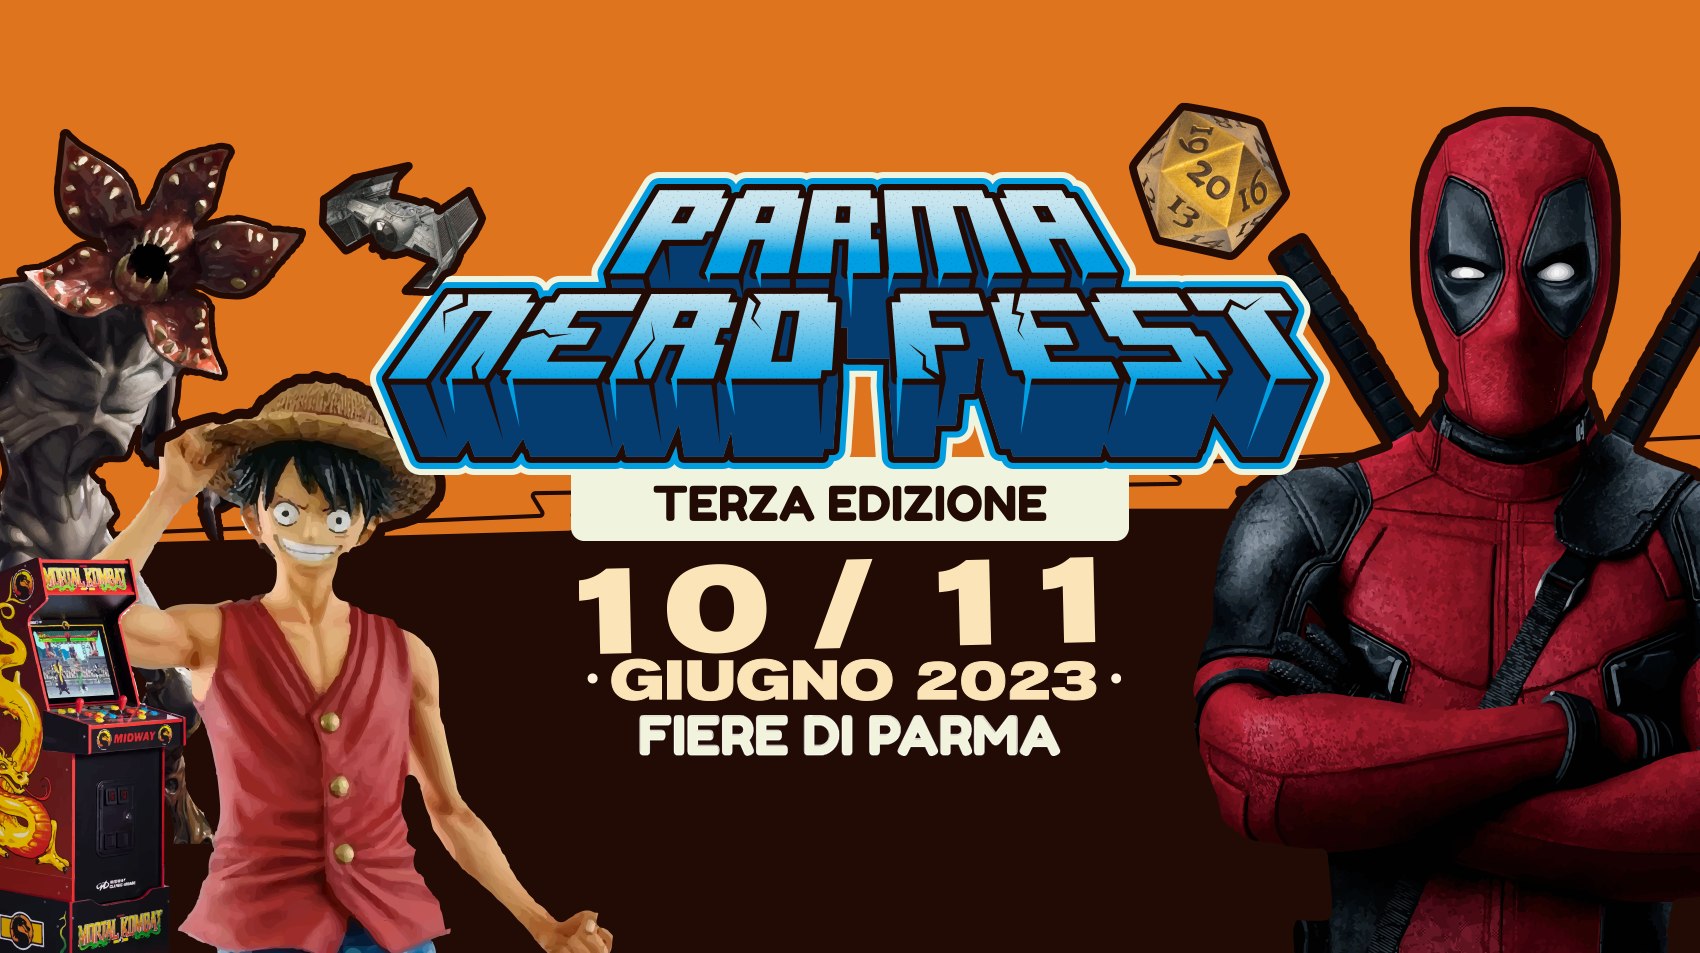 La terza edizione del Parma Nerd Fest: 11 e 12 giugno 2023